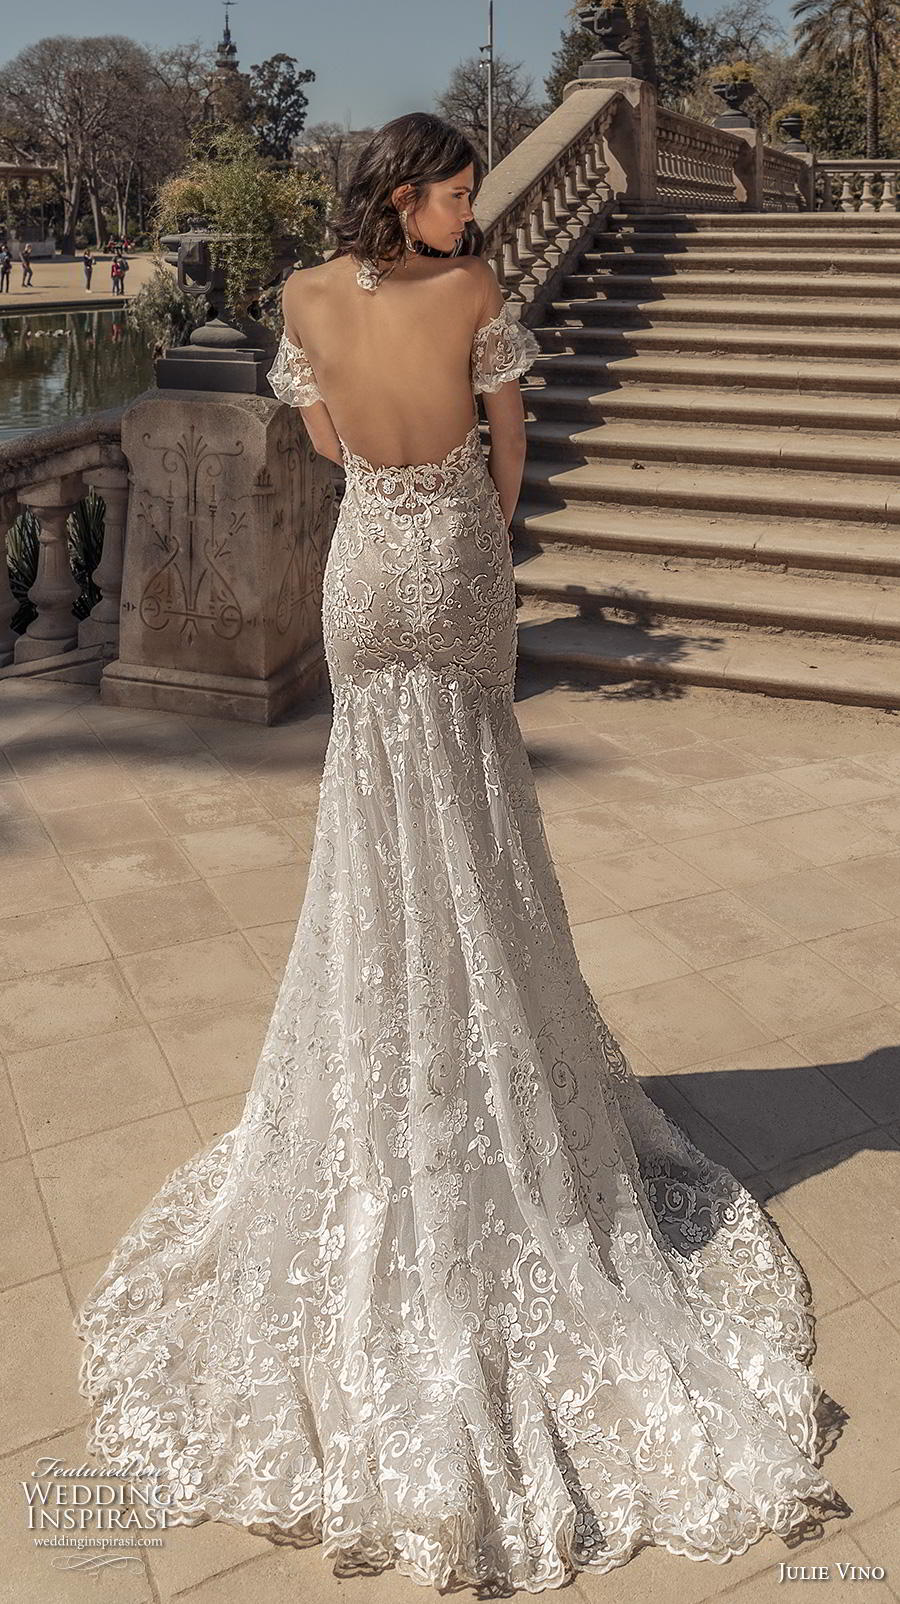 Julie Vino Spring 2020 Wedding Dresses — “Barcelona” Bridal Collection ...